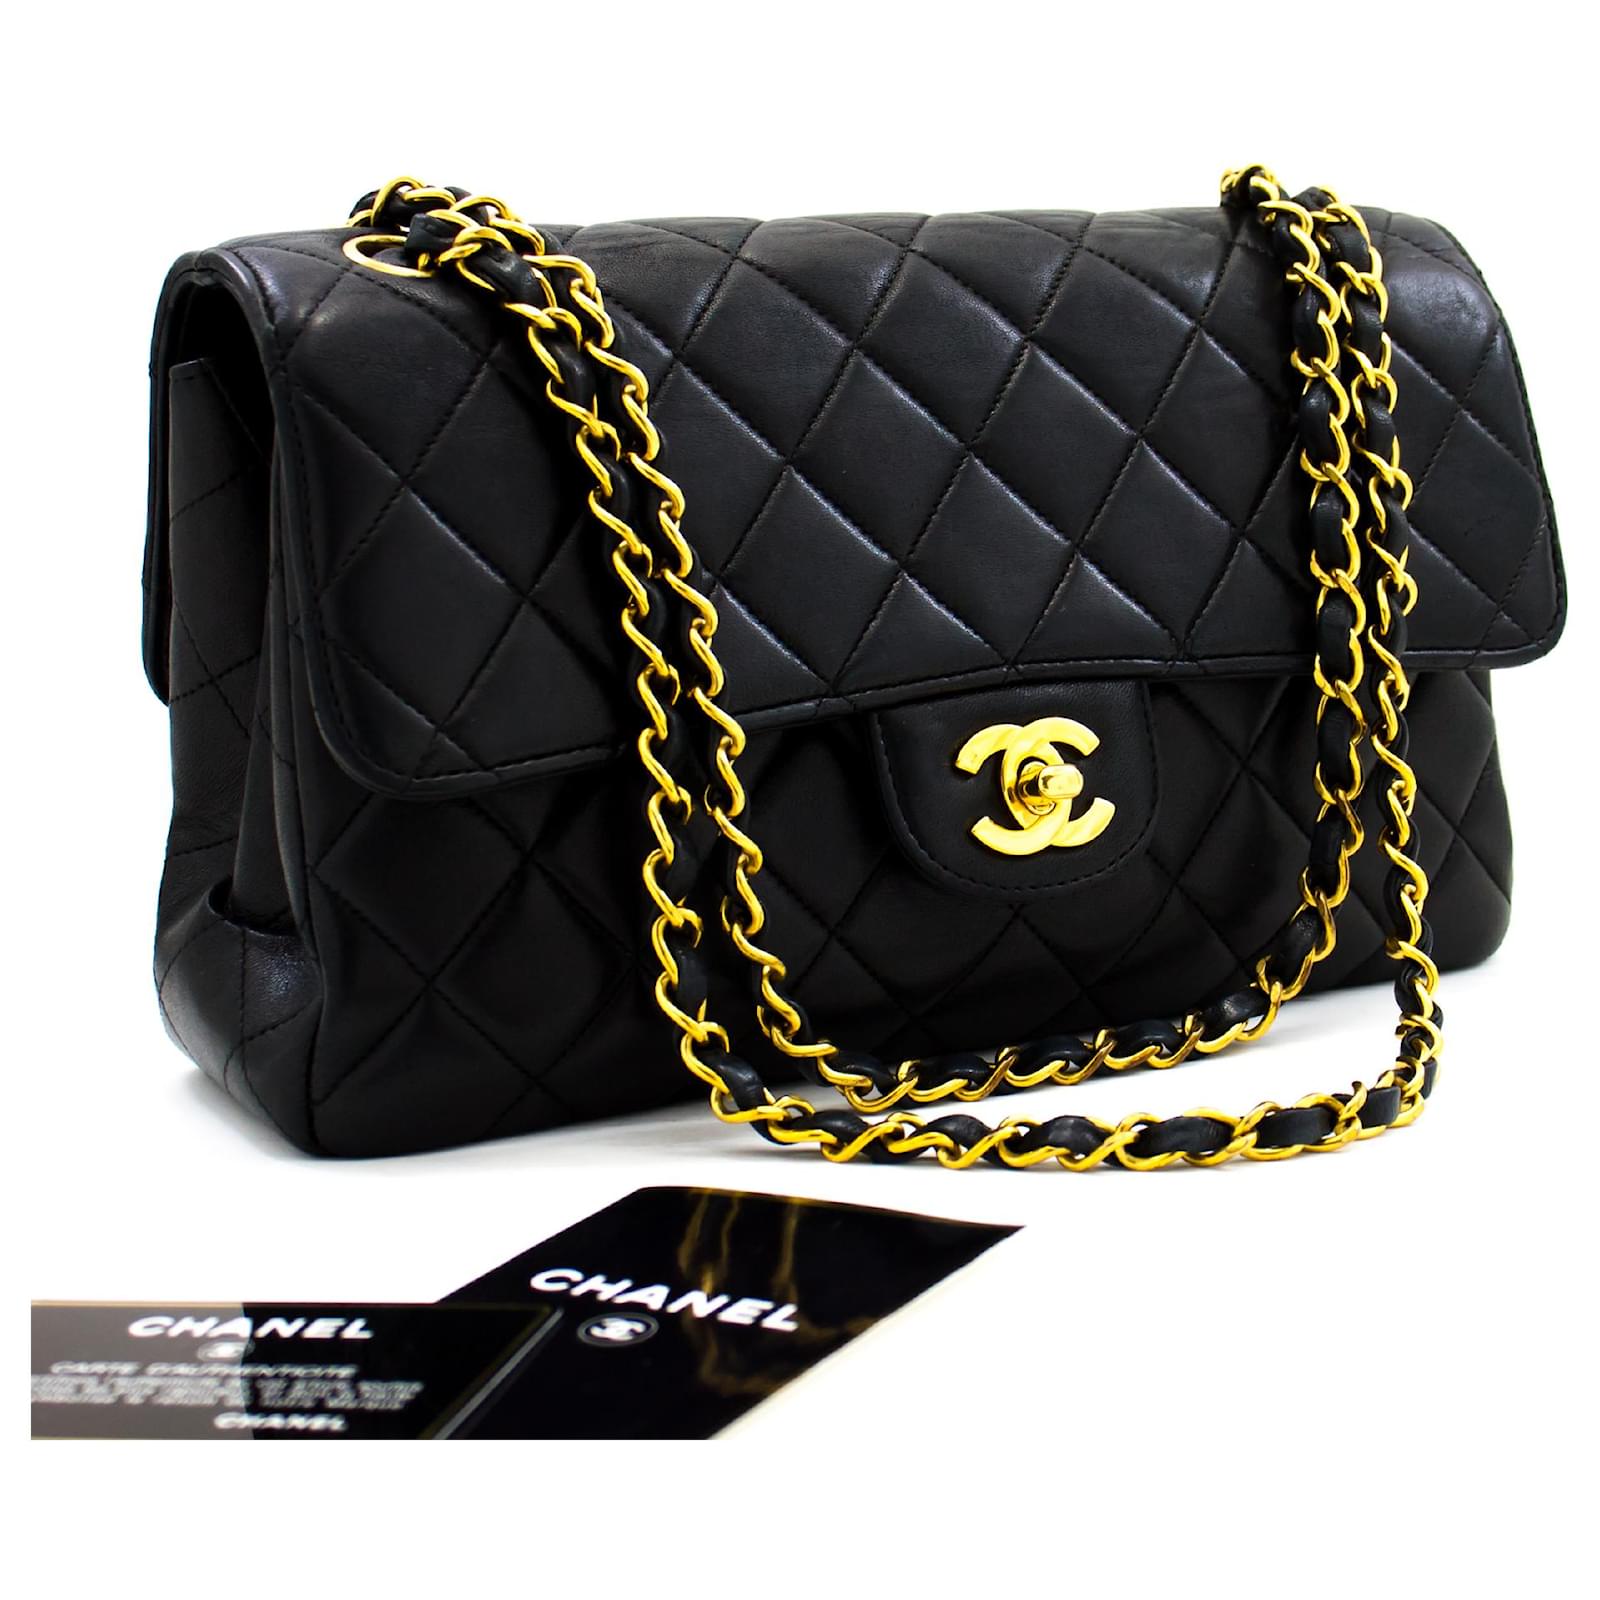 Sac Chanel Timeless en Cuir Matelassé Couleur Noir  MCA Luxury Bags